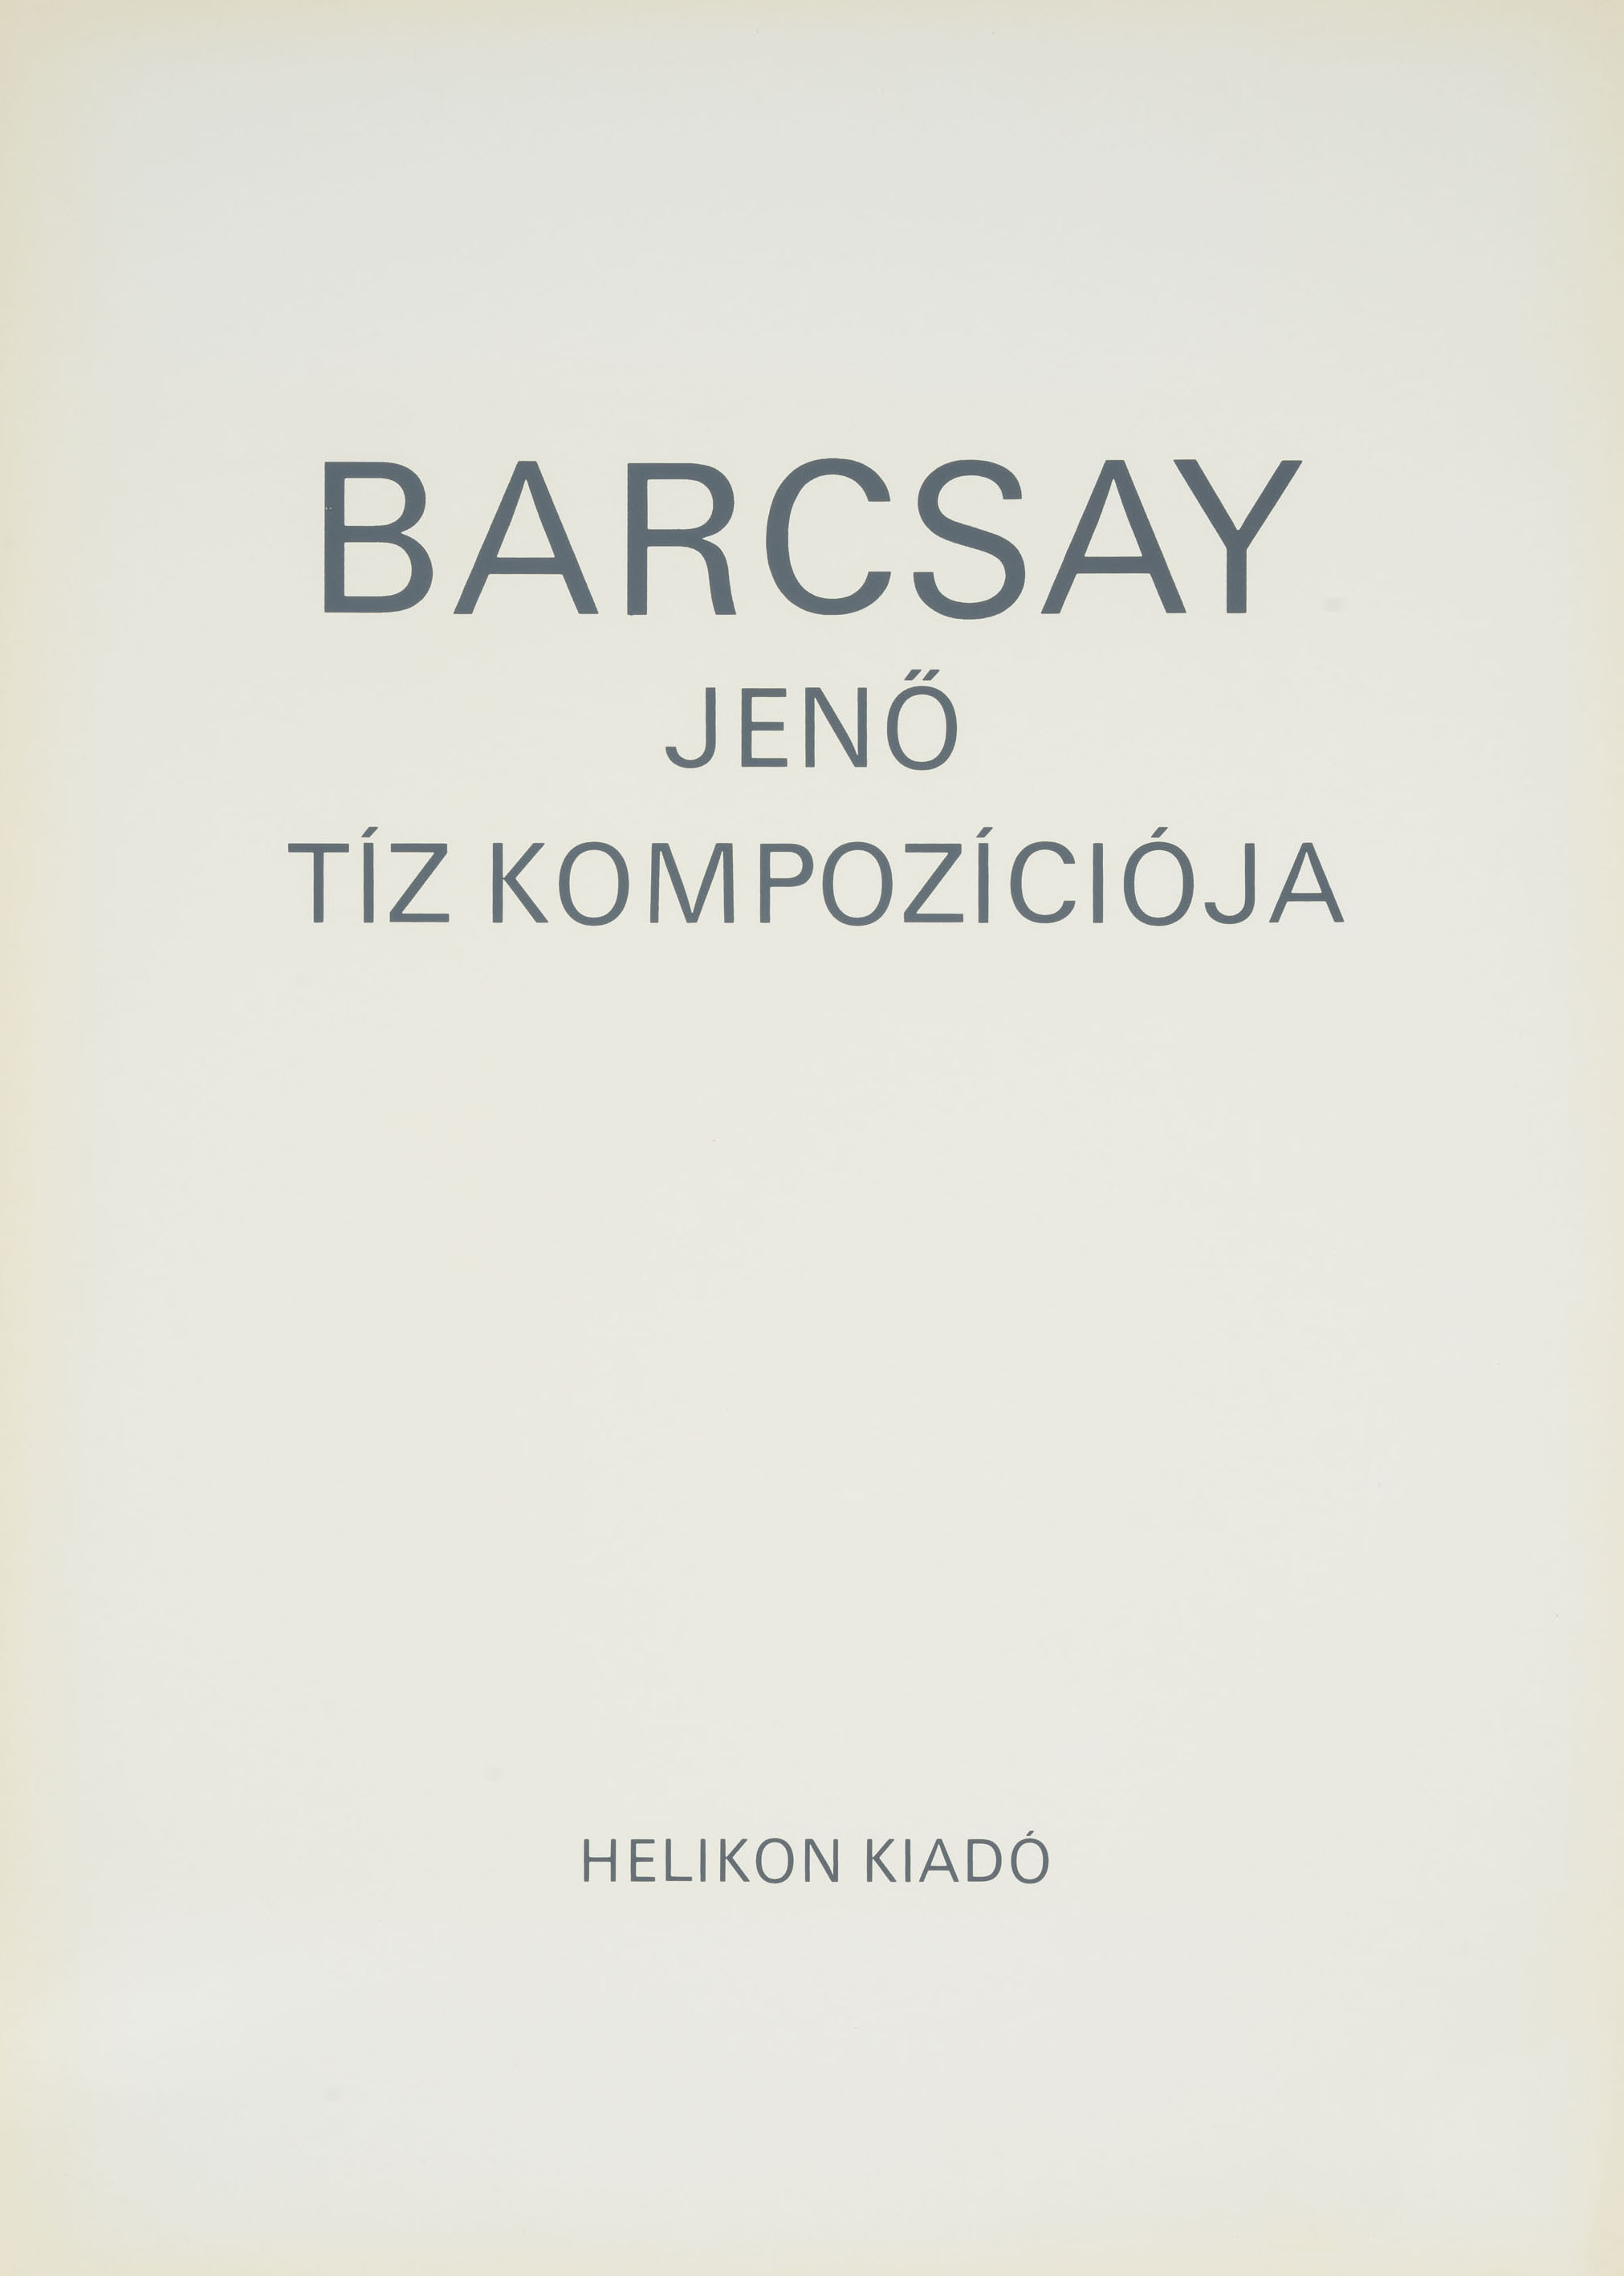 Jenő Barcsay: Barcsay Jenő tíz kompoziciója (Jeno Barcsay’s Ten Compositions) (The Salgo Trust for Education CC BY-NC-SA)